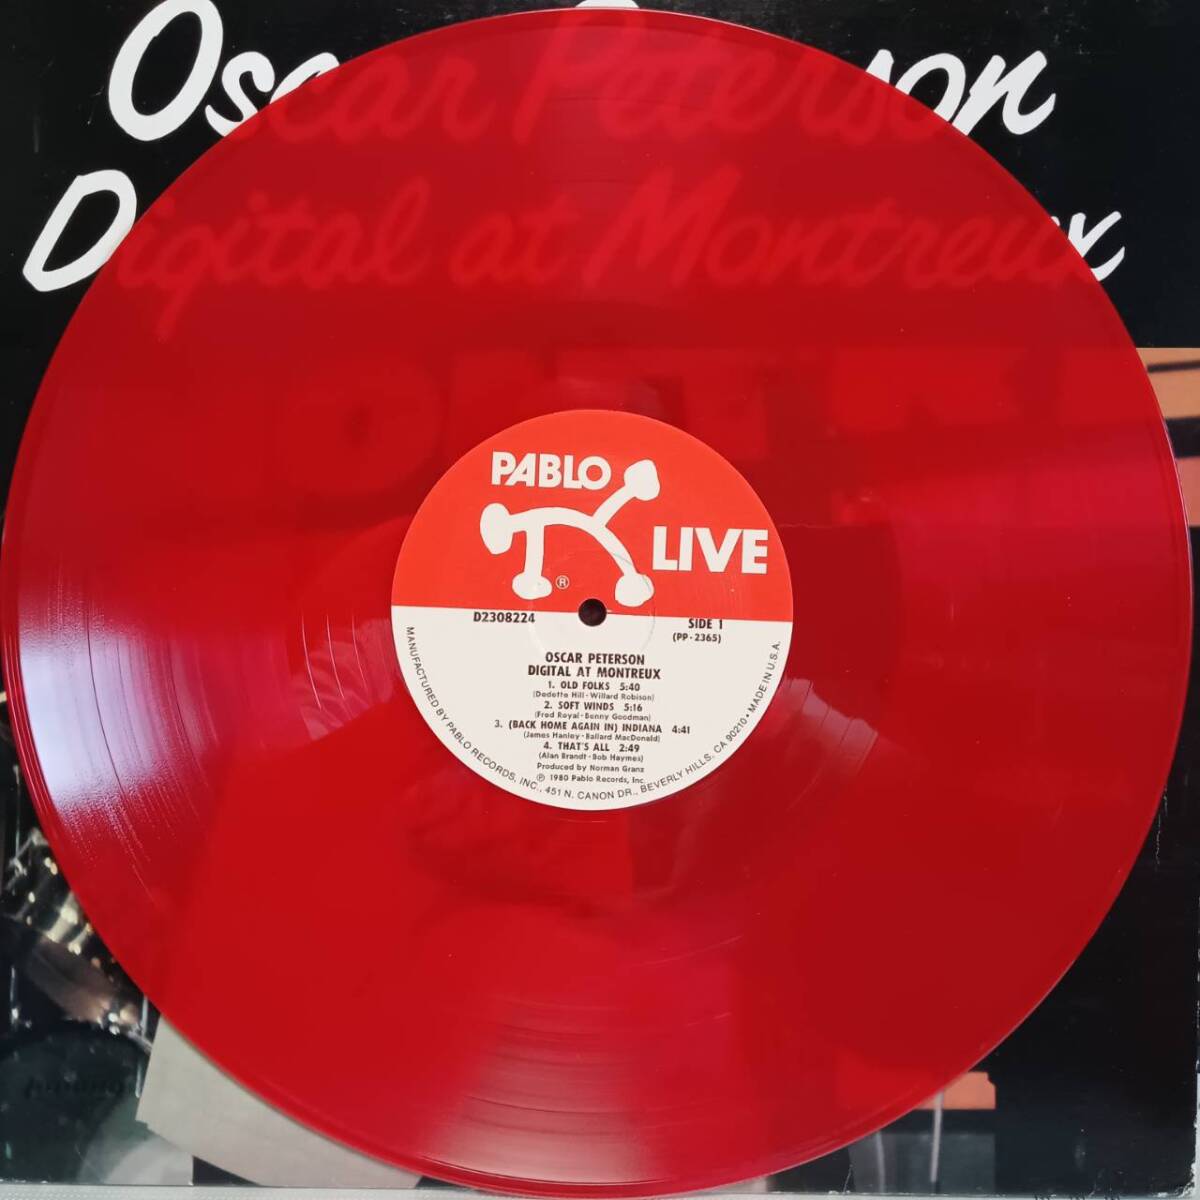 赤盤 米PABLOオリジLP 高音質デジタル録音 Oscar Peterson / Digital At Montreux 1980年 D2308224 オスカー・ピーターソン Red Color_画像1